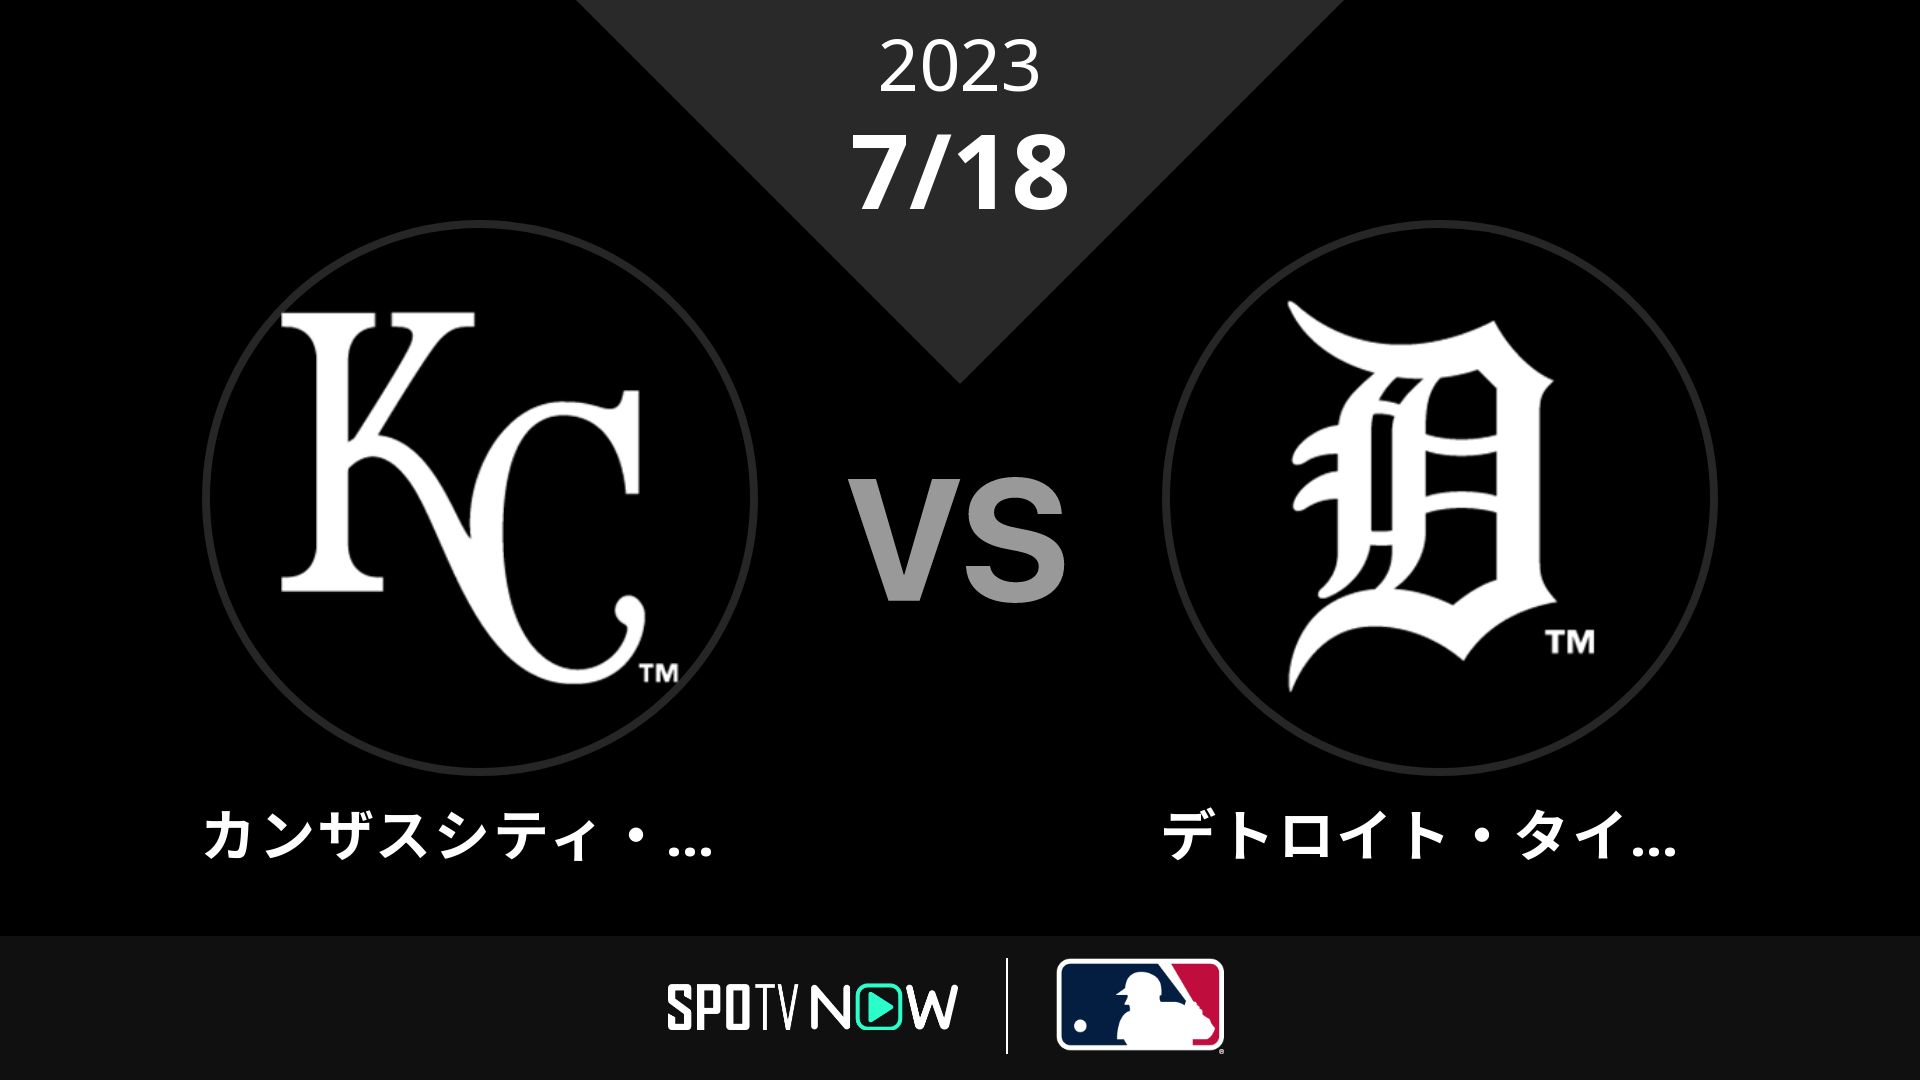 2023/7/18 ロイヤルズ vs タイガース [MLB]